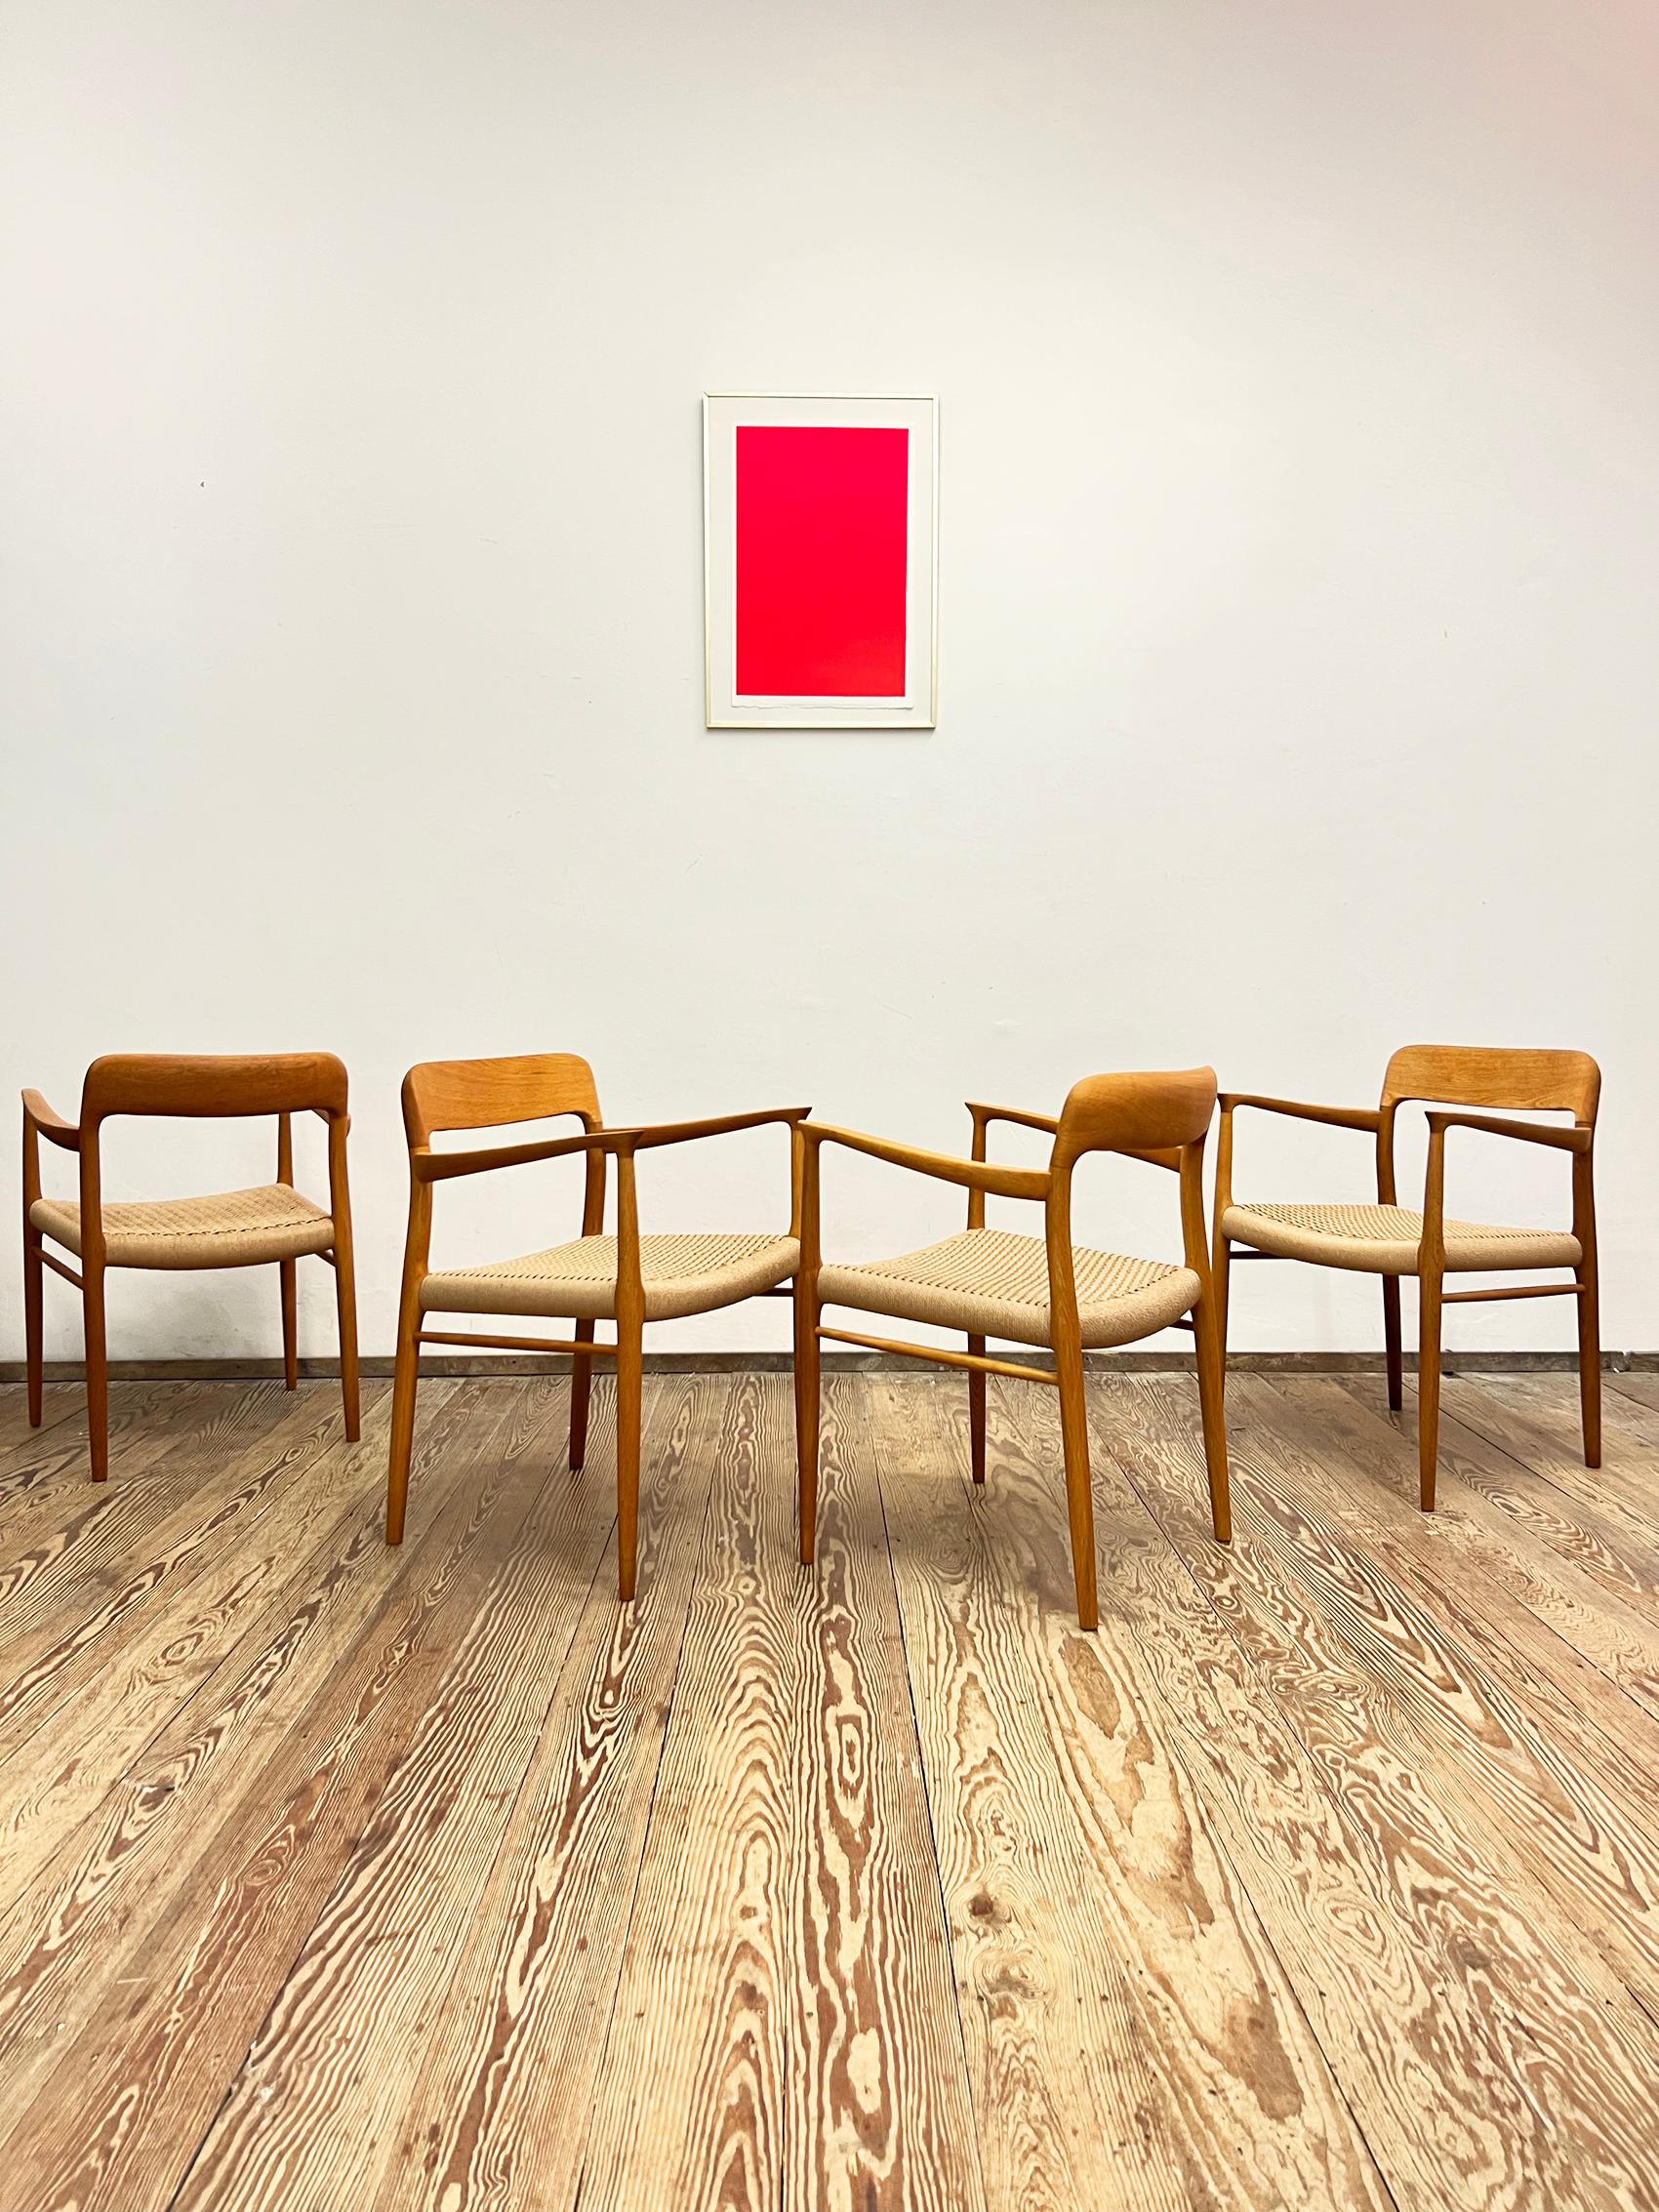 Dimensions des fauteuils à accoudoir : 58x56x76x44cm (largeur x profondeur x hauteur x hauteur d'assise)

Danish Design by Niels O. Møller manufacured by J.L. Møllers au Danemark dans les années 1950. L'ensemble comprend 4 chaises de salle à manger